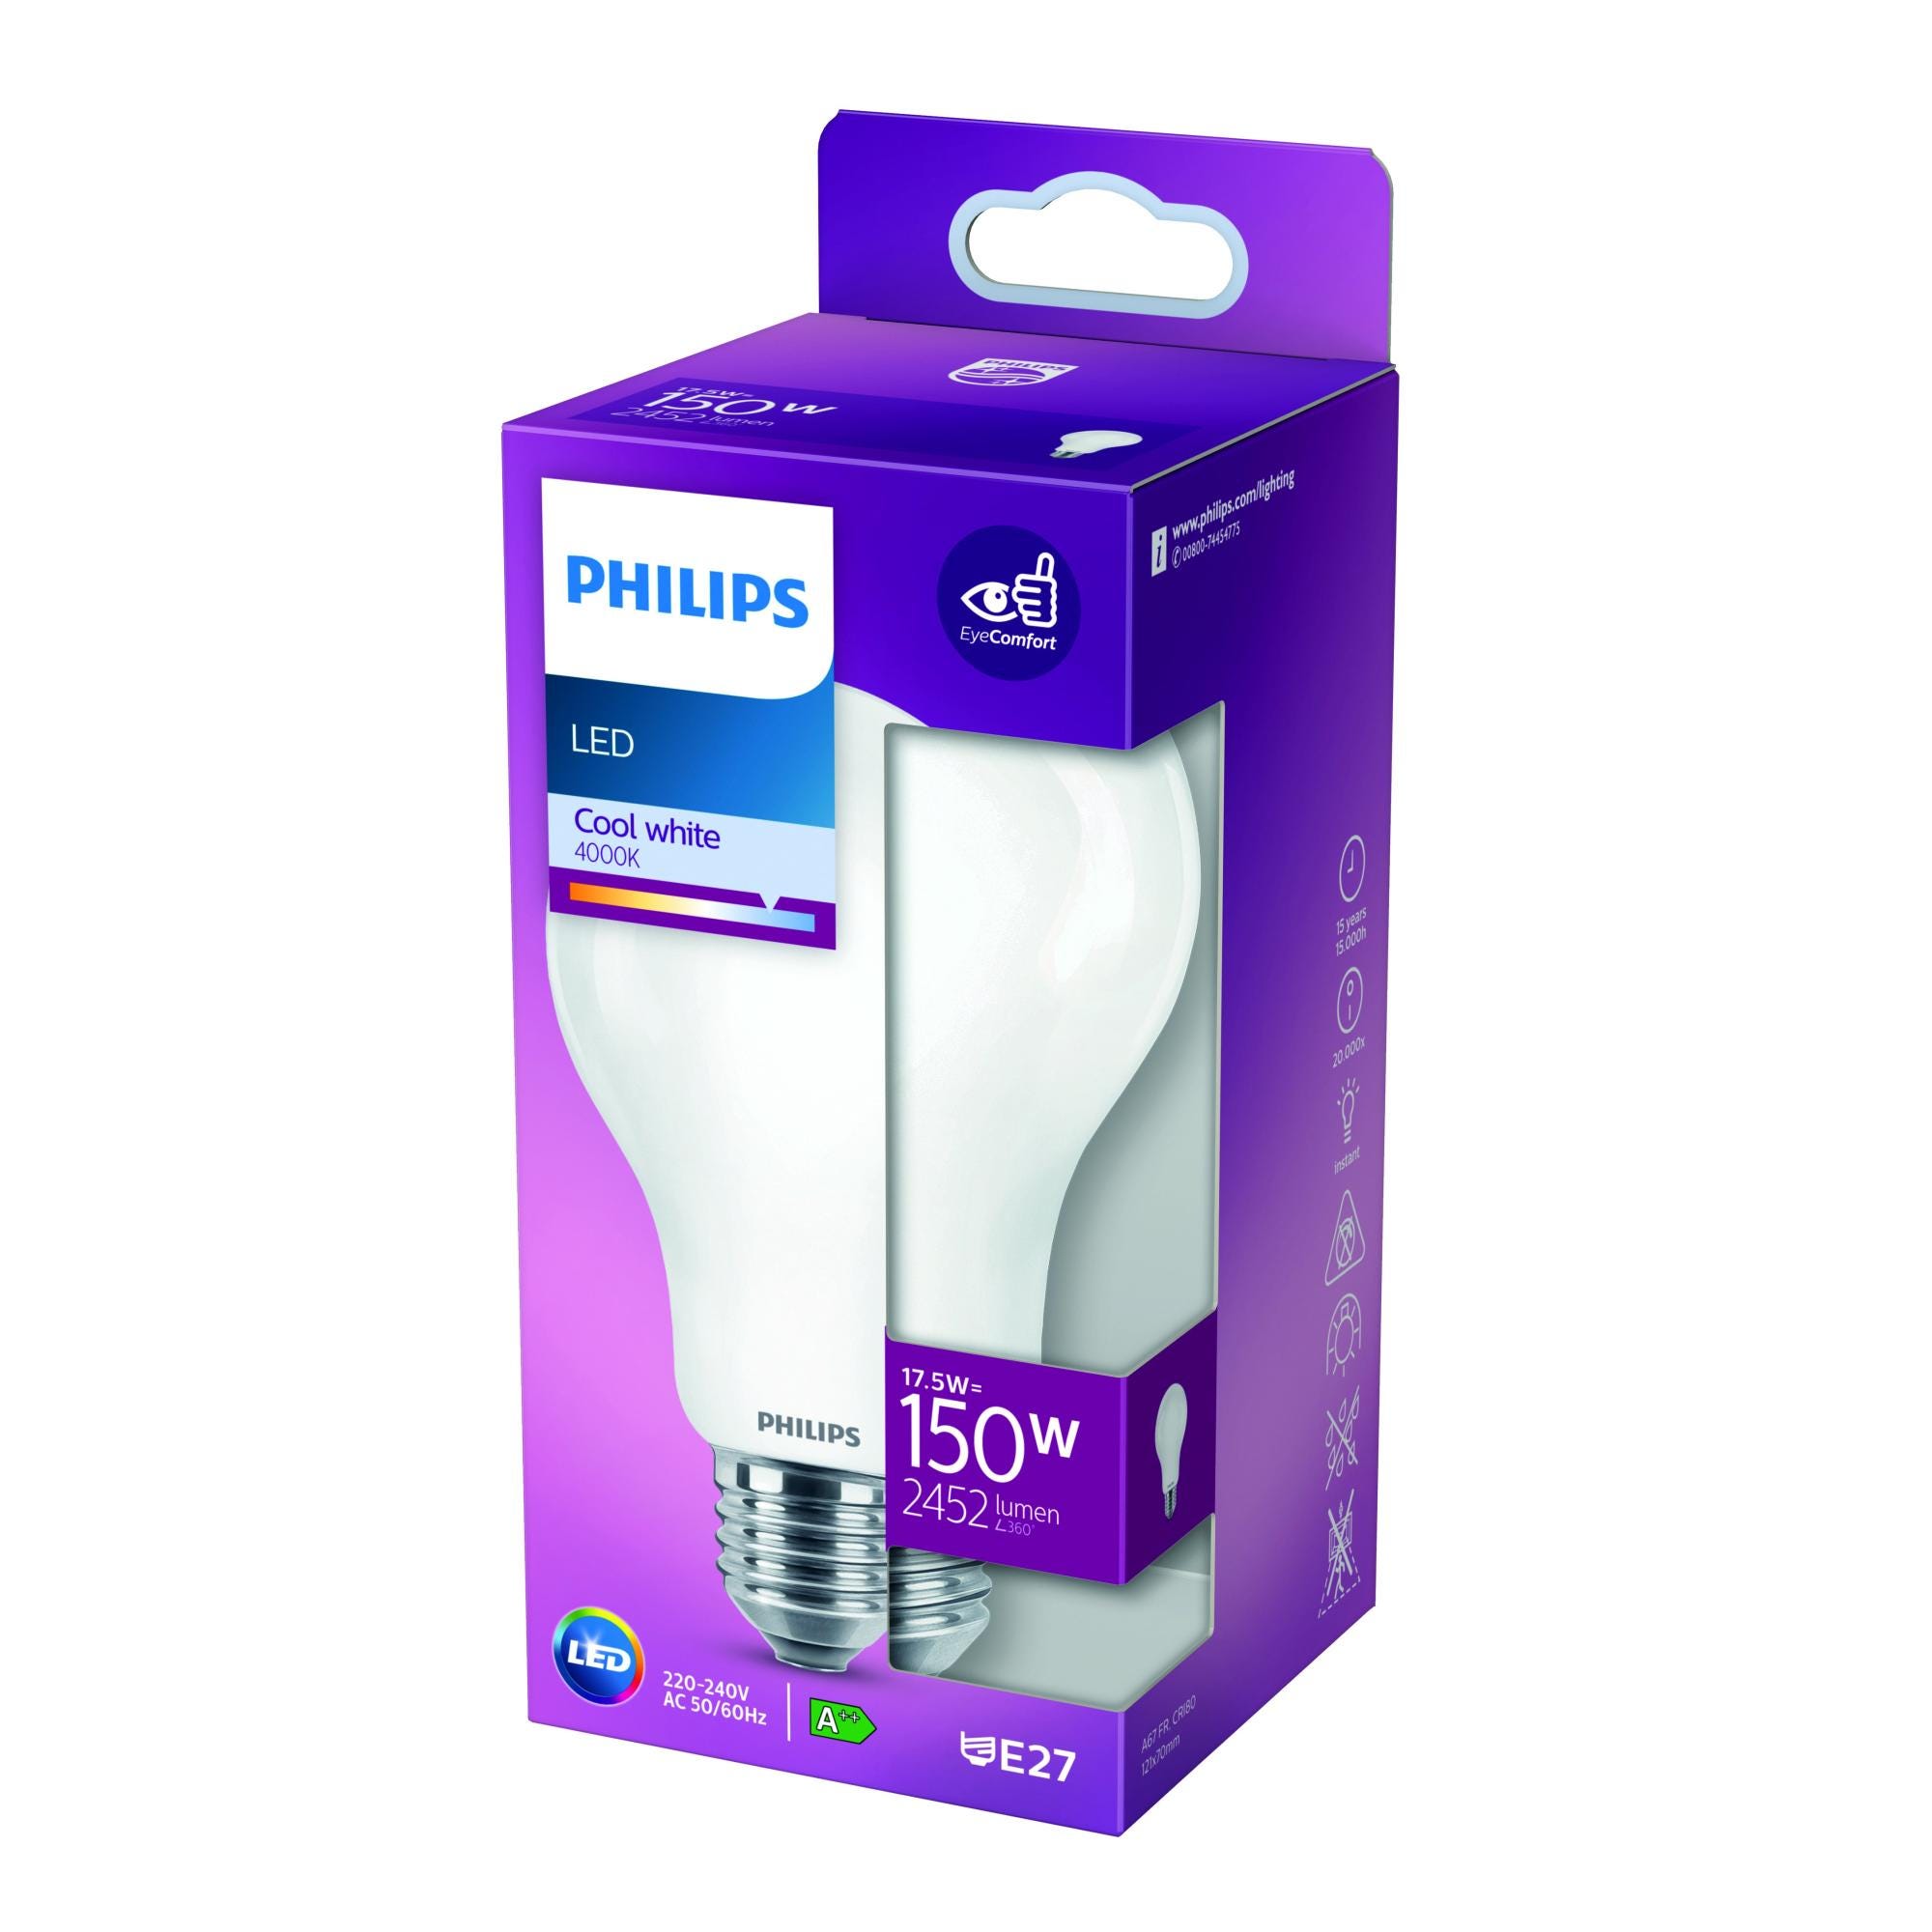 Philips Classic LEDbulb E27 Pera Ghiaccio 17.5W 2452lm - 827 Bianco Molto  Caldo, Sostitutiva 150W